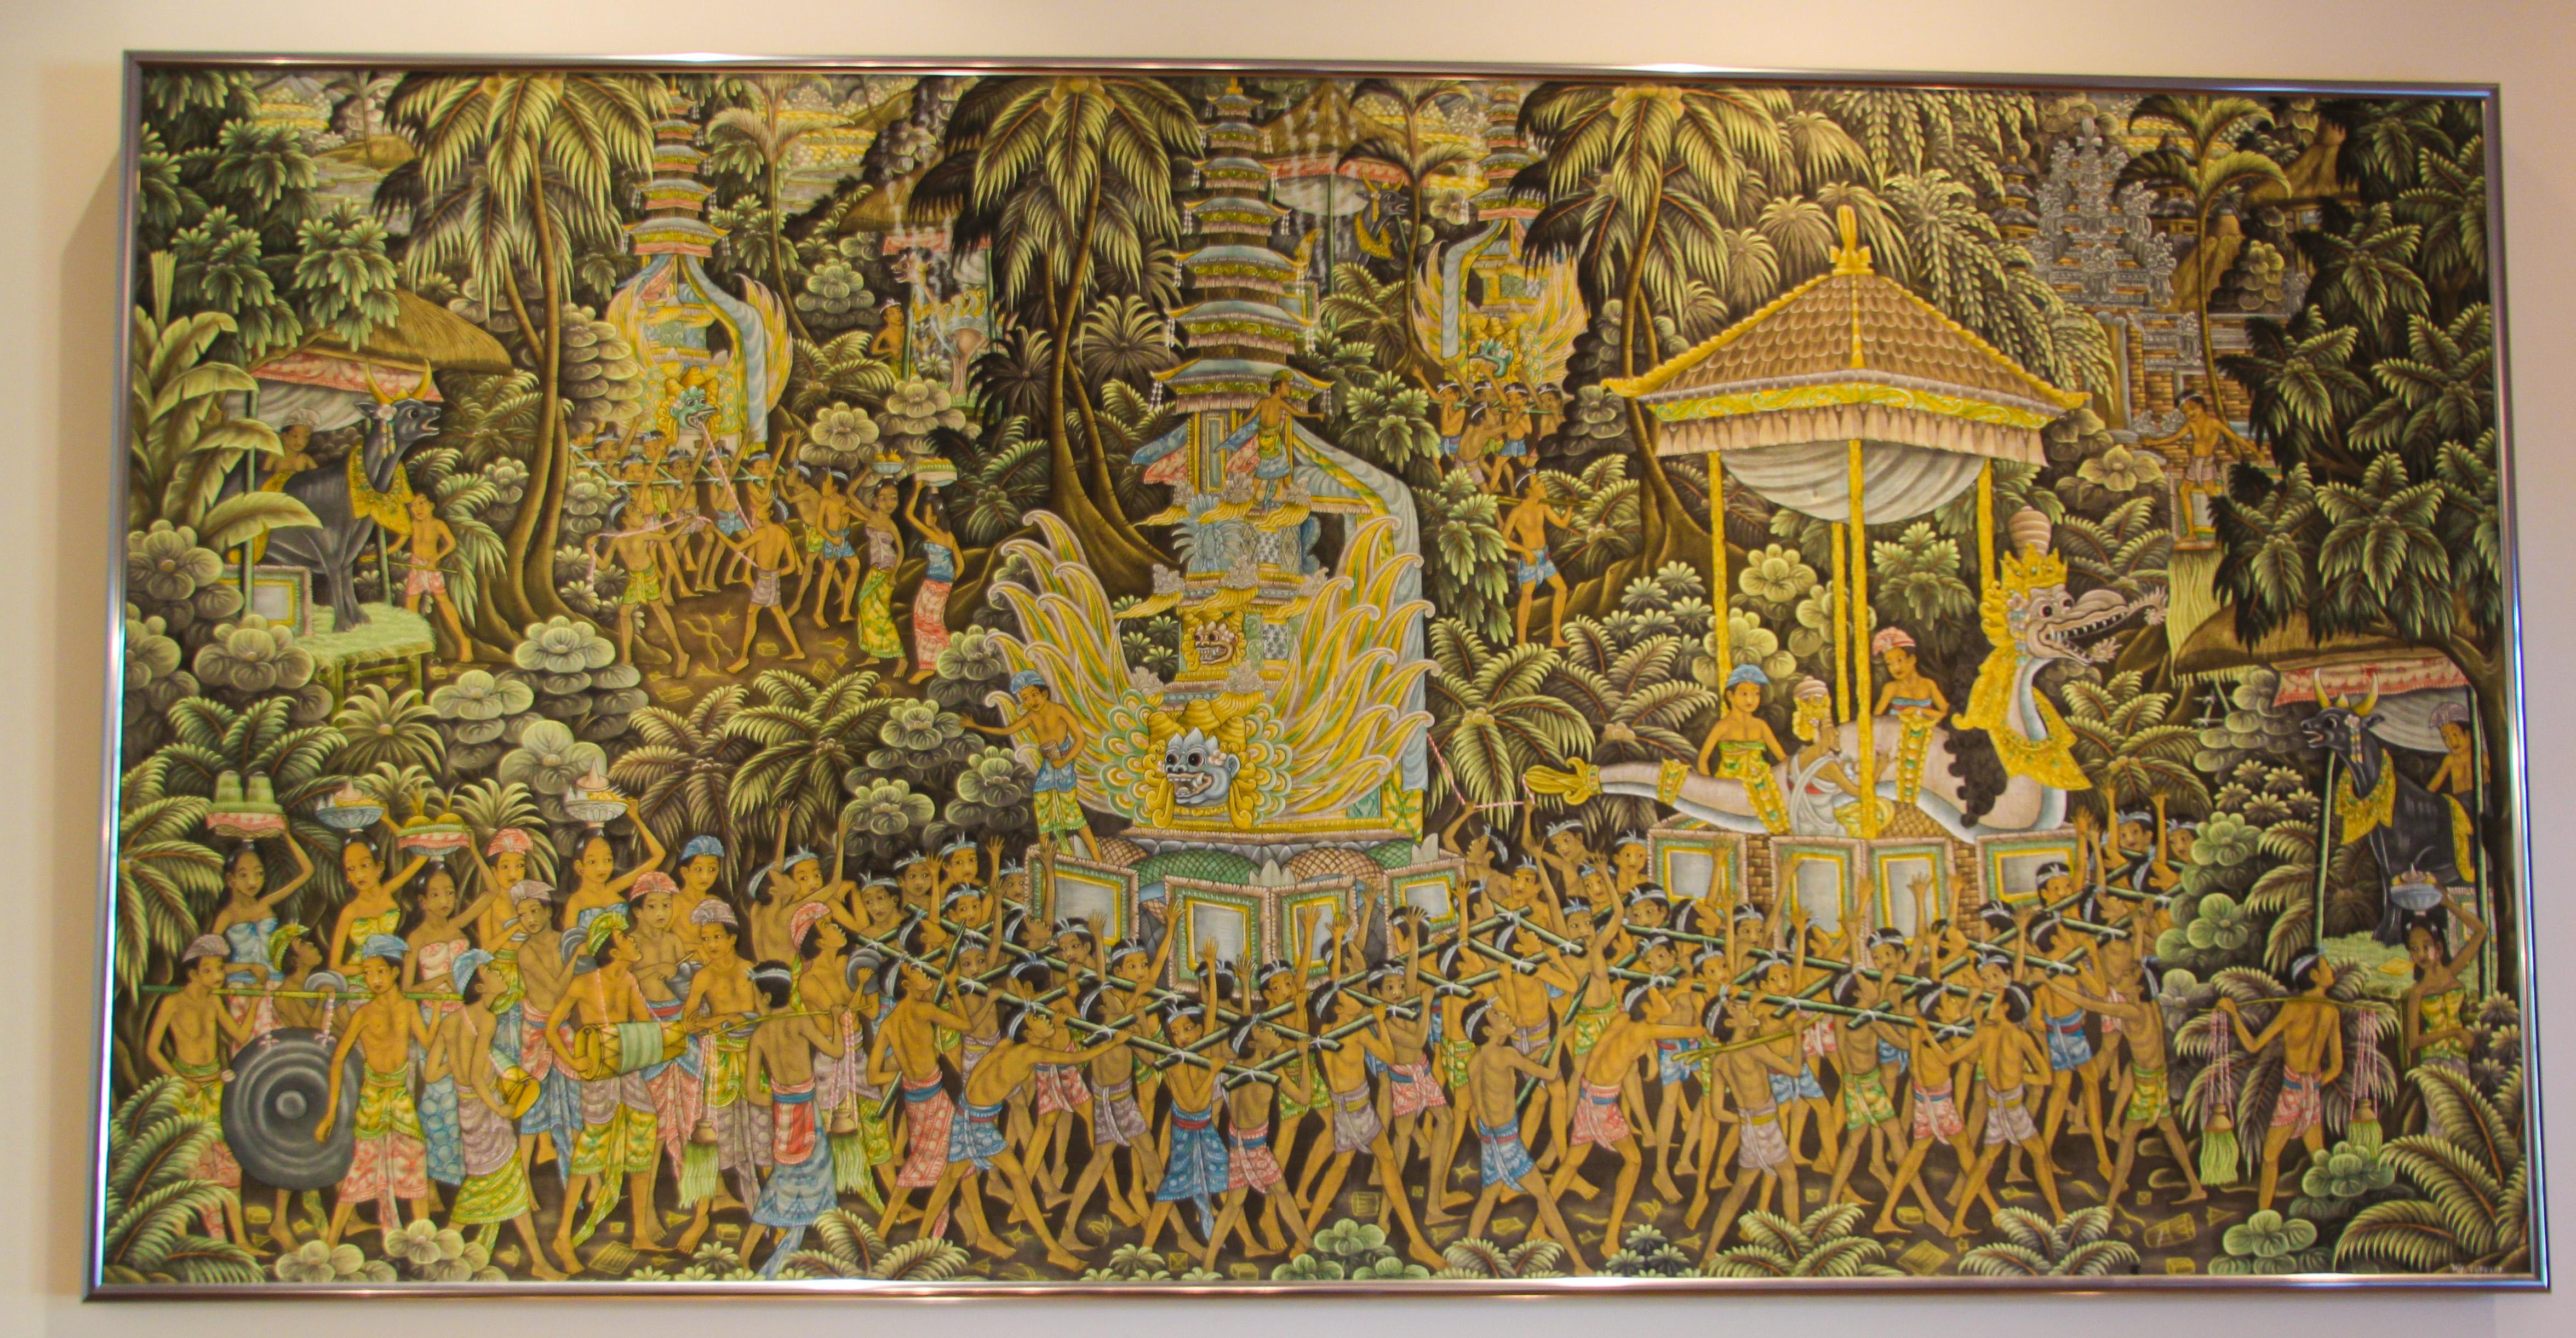 Balinesische Malerei aus der Mitte des 20. Jahrhunderts auf Seidenstoff, gerahmt.
Vintage große balinesische Kunst Gemälde, aus Ubud, Bali Acryl auf Seide.
Schöne Kunstwerke des indonesischen Künstlers aus Ubud. 
Gemalt in Peliatan, Ubud Bali von